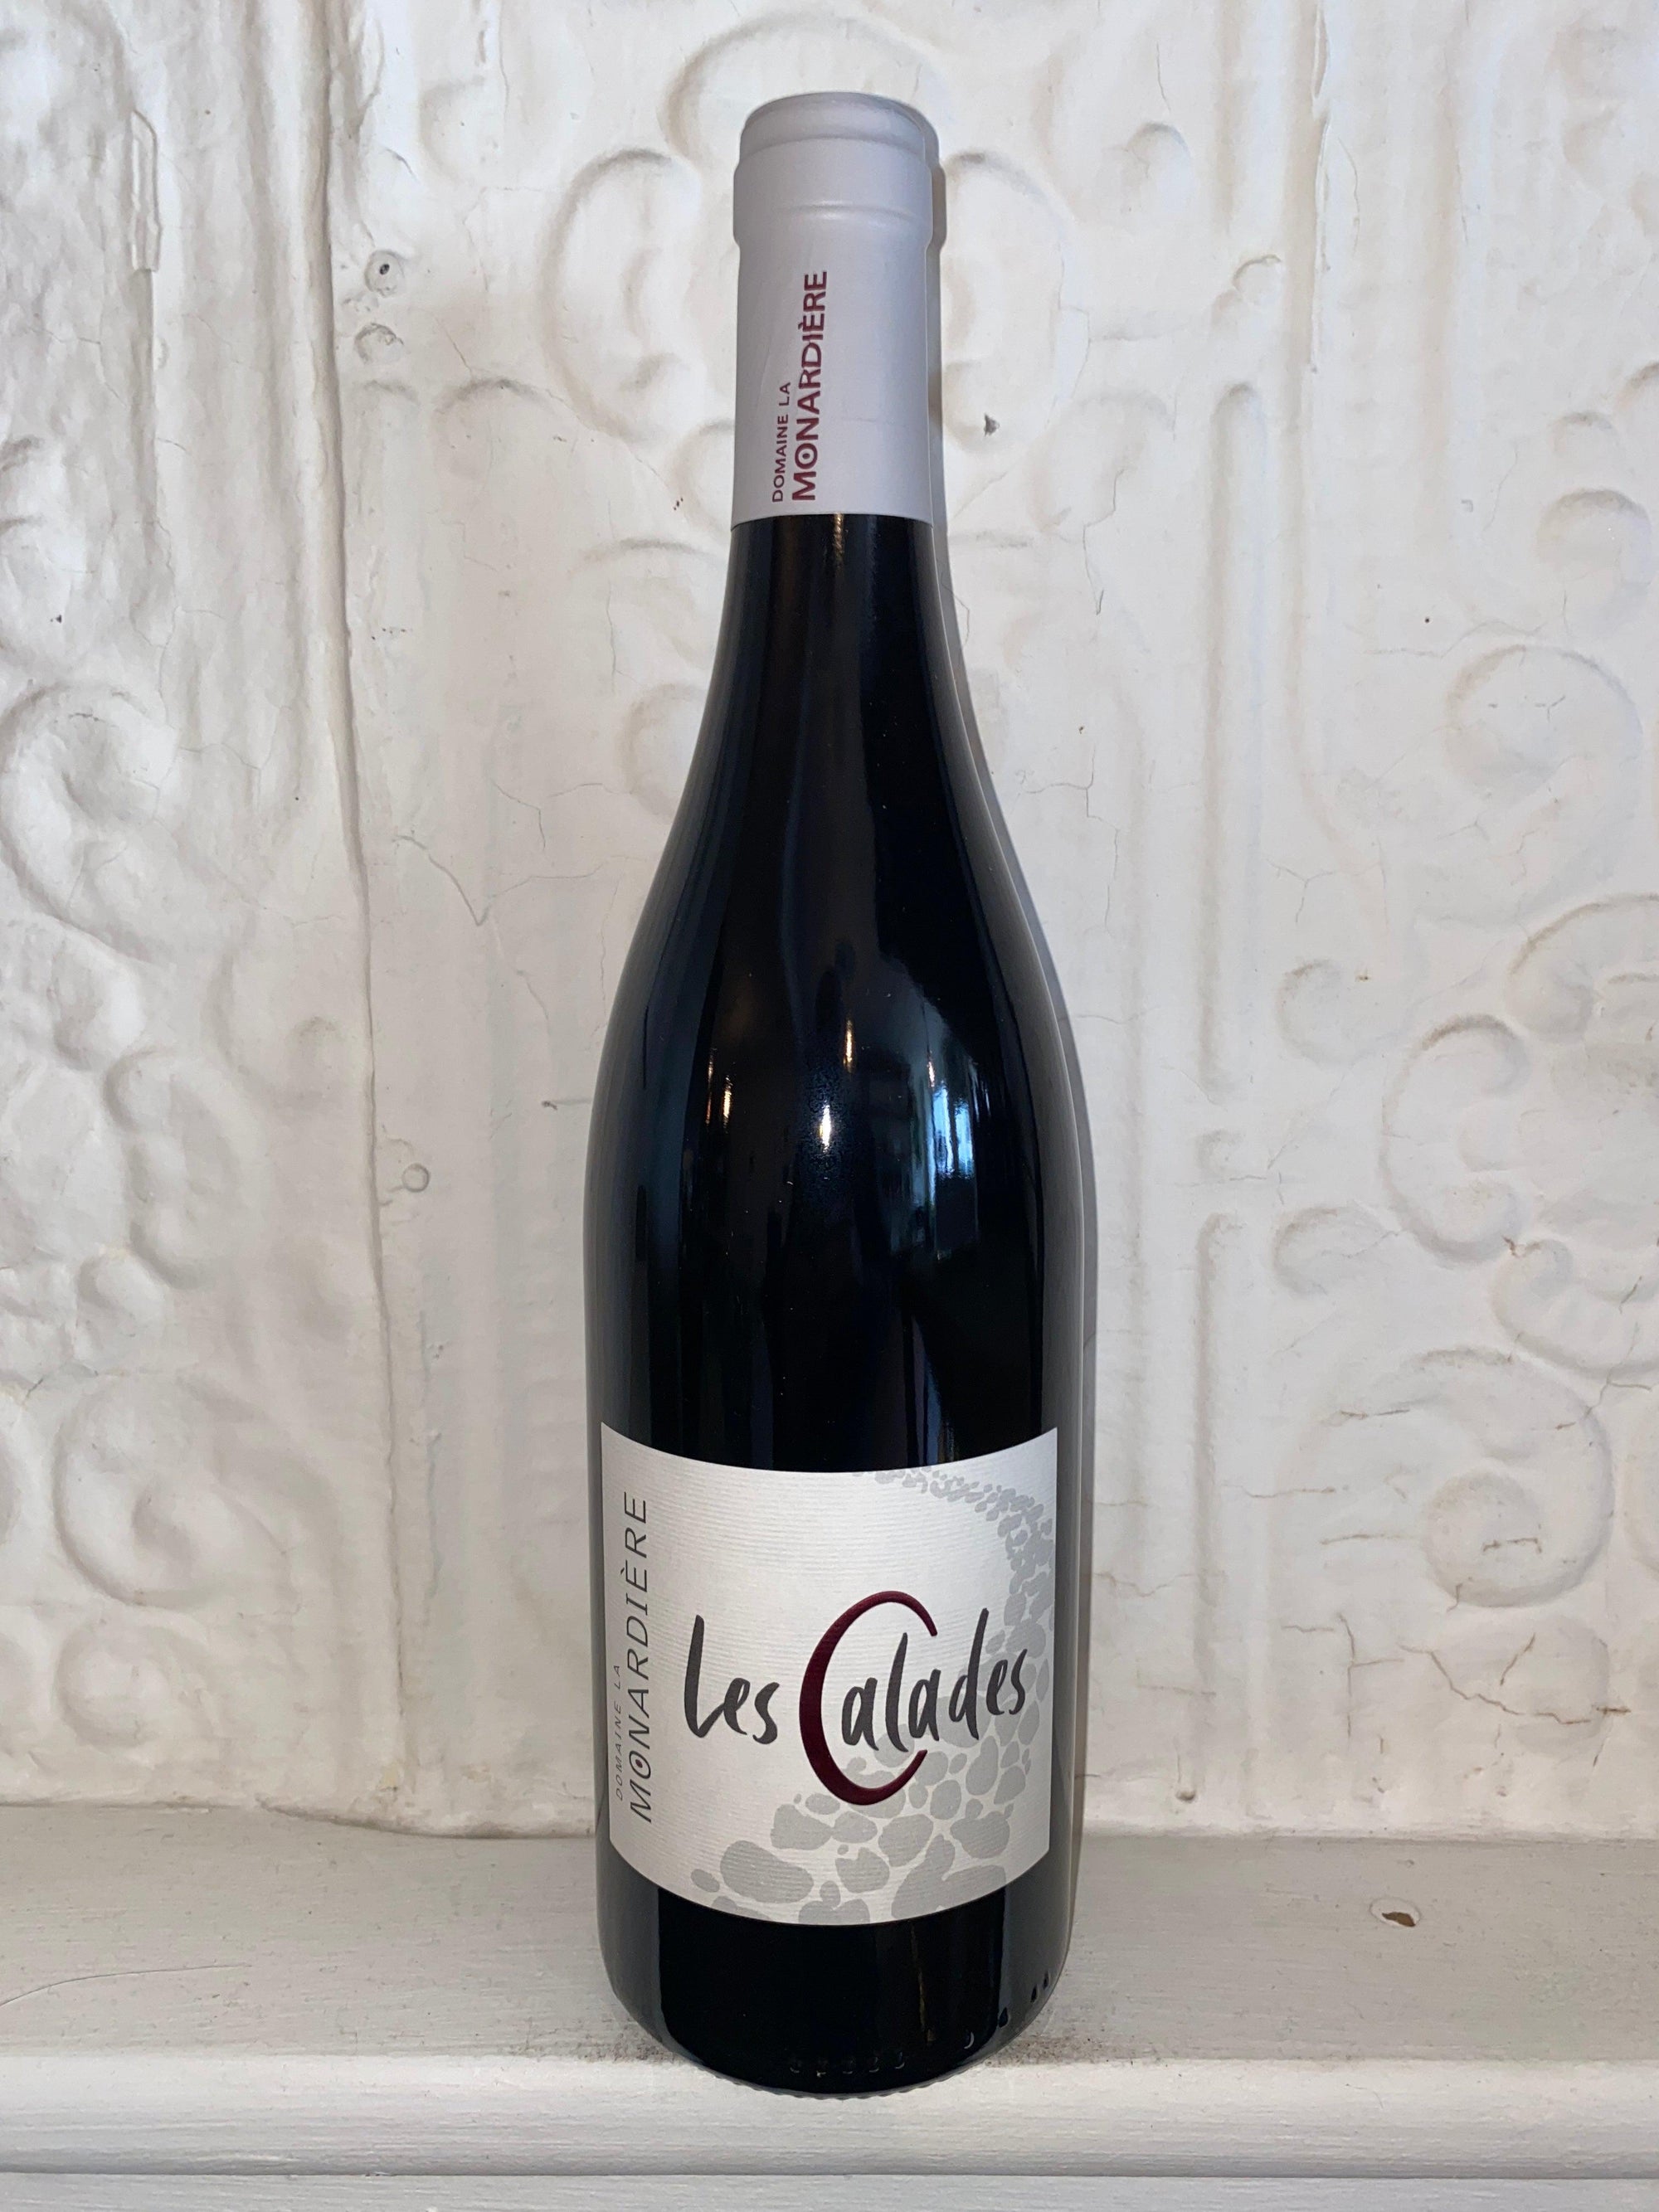 Les Calades Cotes du Rhone, Domaine la Monardiere 2019 (Rhone Valley, France)-Wine-Bibber & Bell